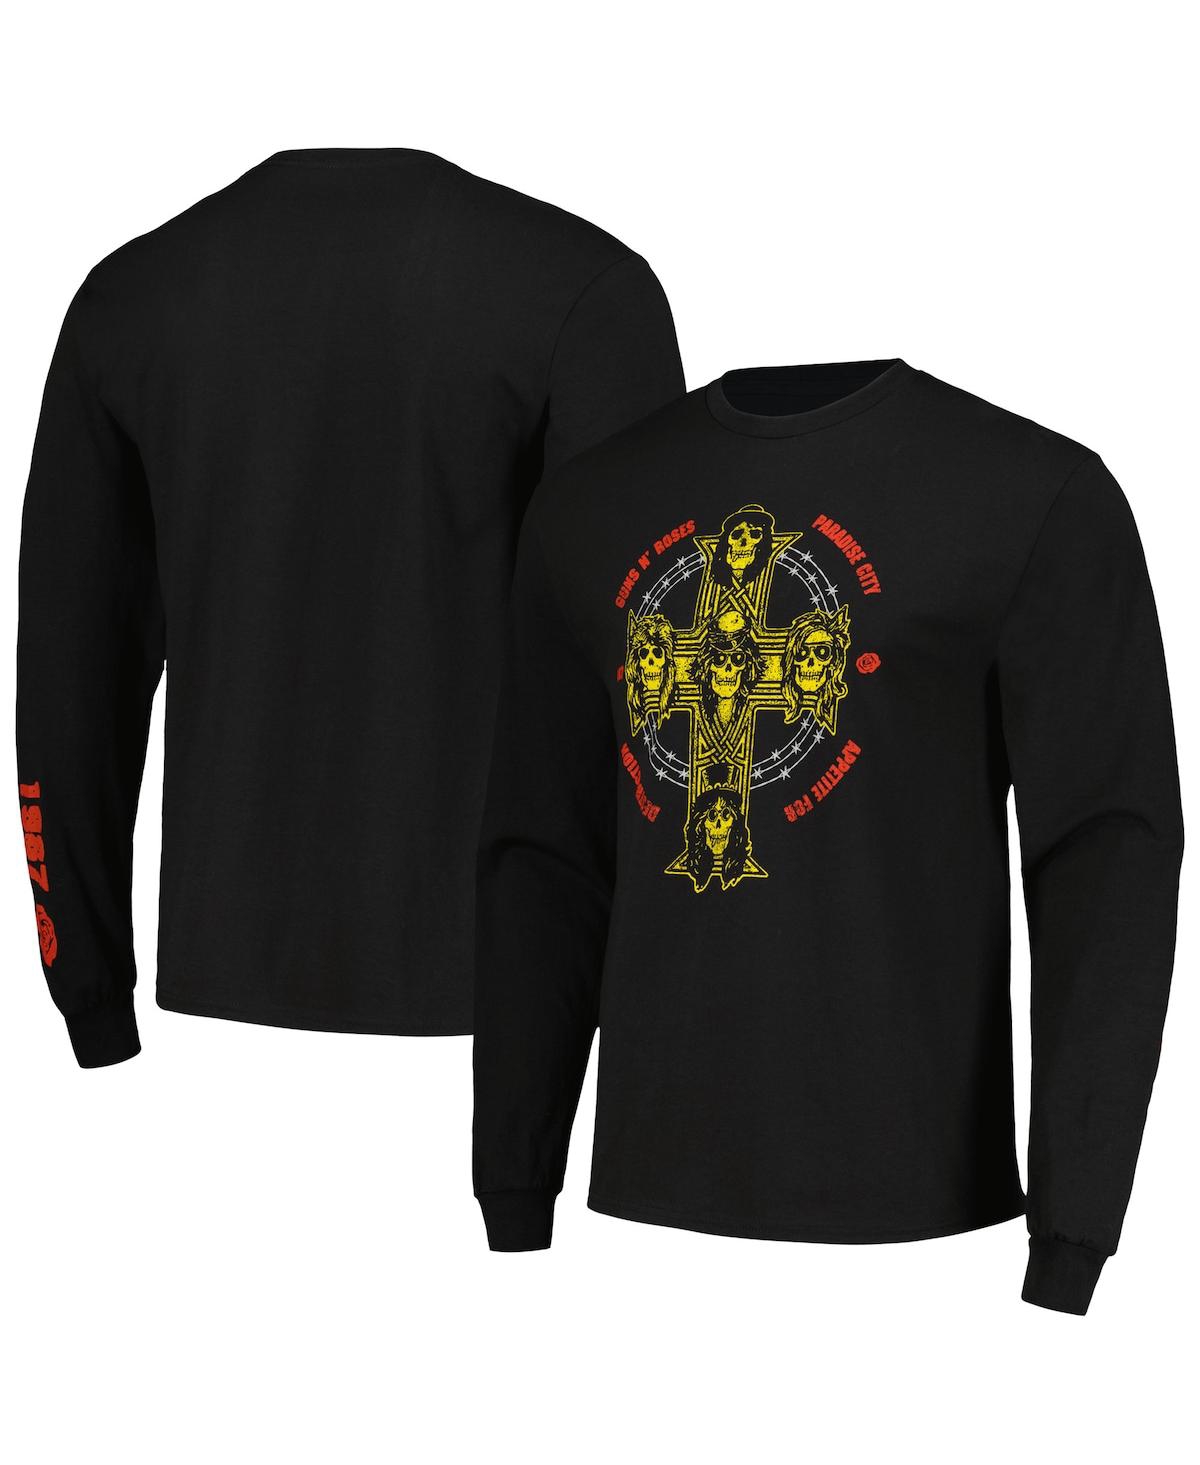 Men's and Women's Black Guns n Roses Appetite Cross Long Sleeve T-shirt - Black